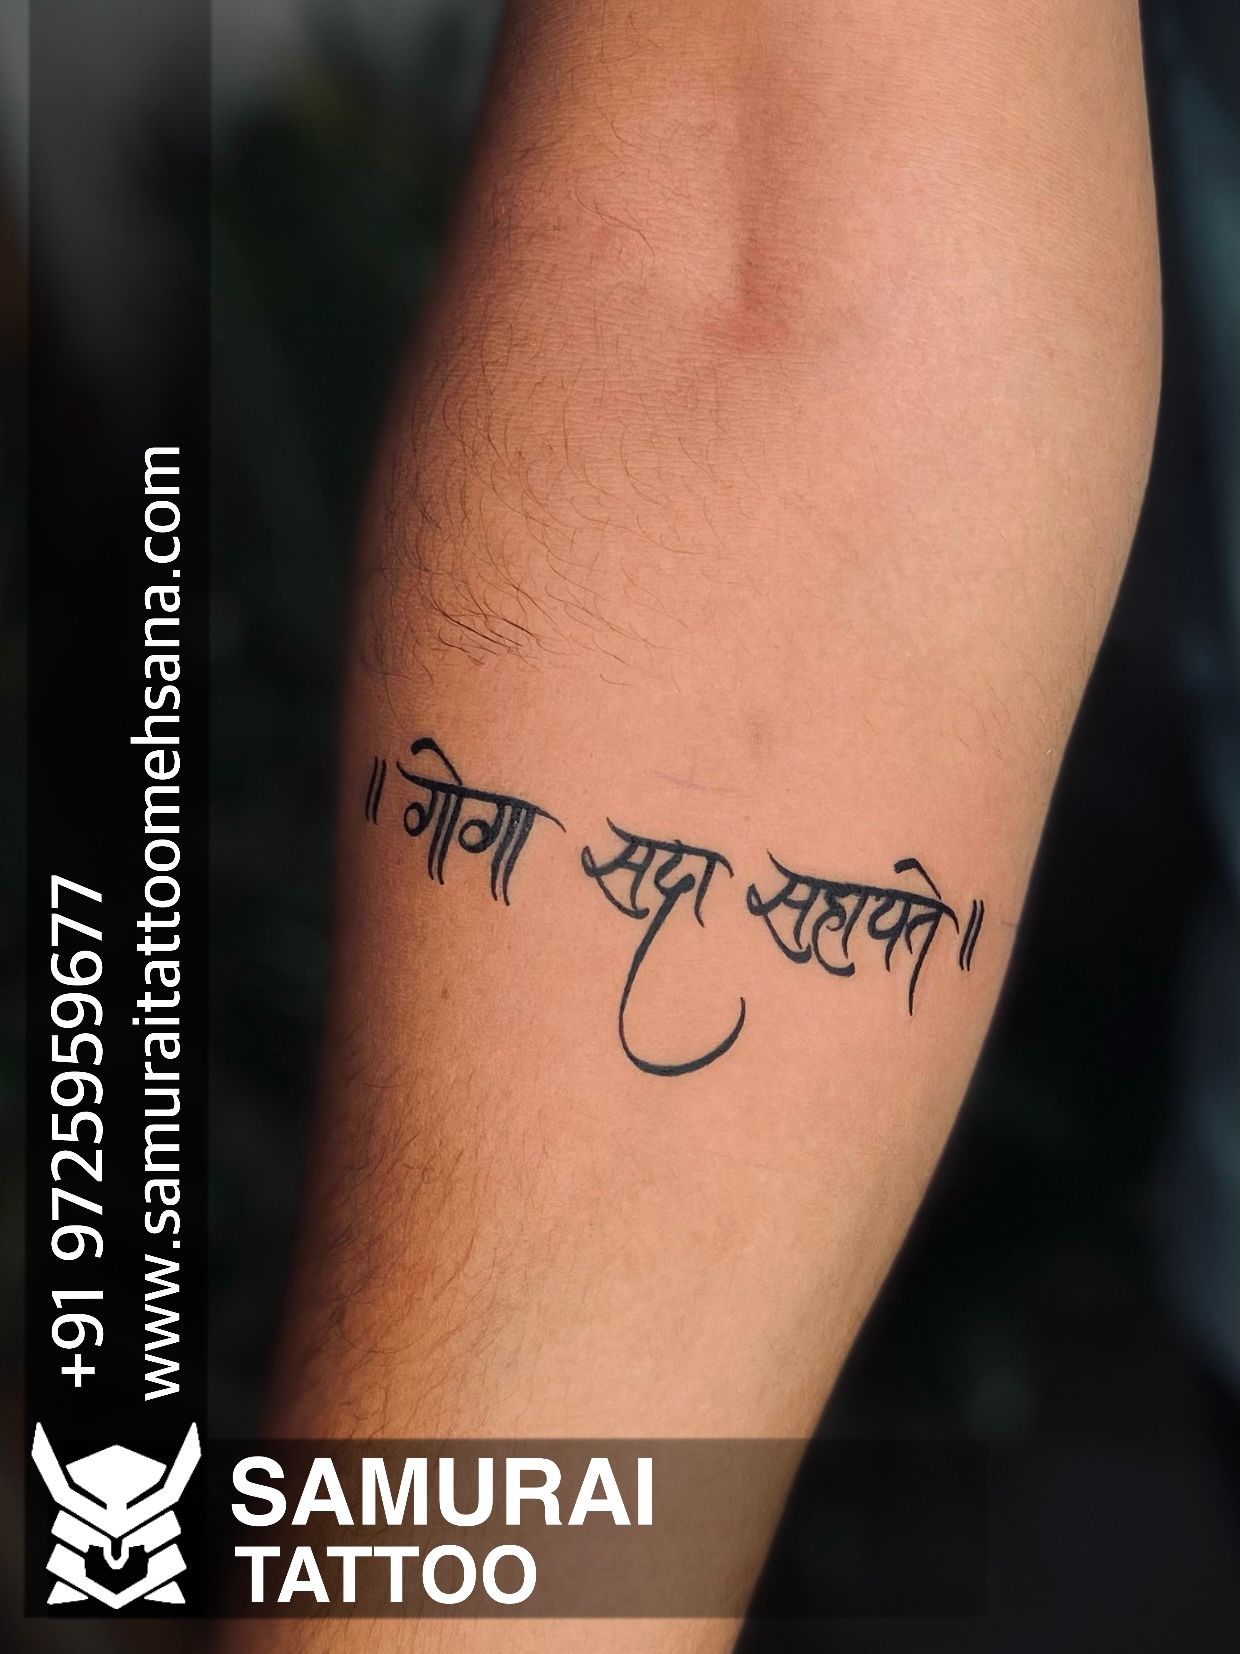 Temporary Tattoowala Chhatrapati Shivaji Maharaj Tattoo on Hand Waterproof  Temporary Body Tattoo